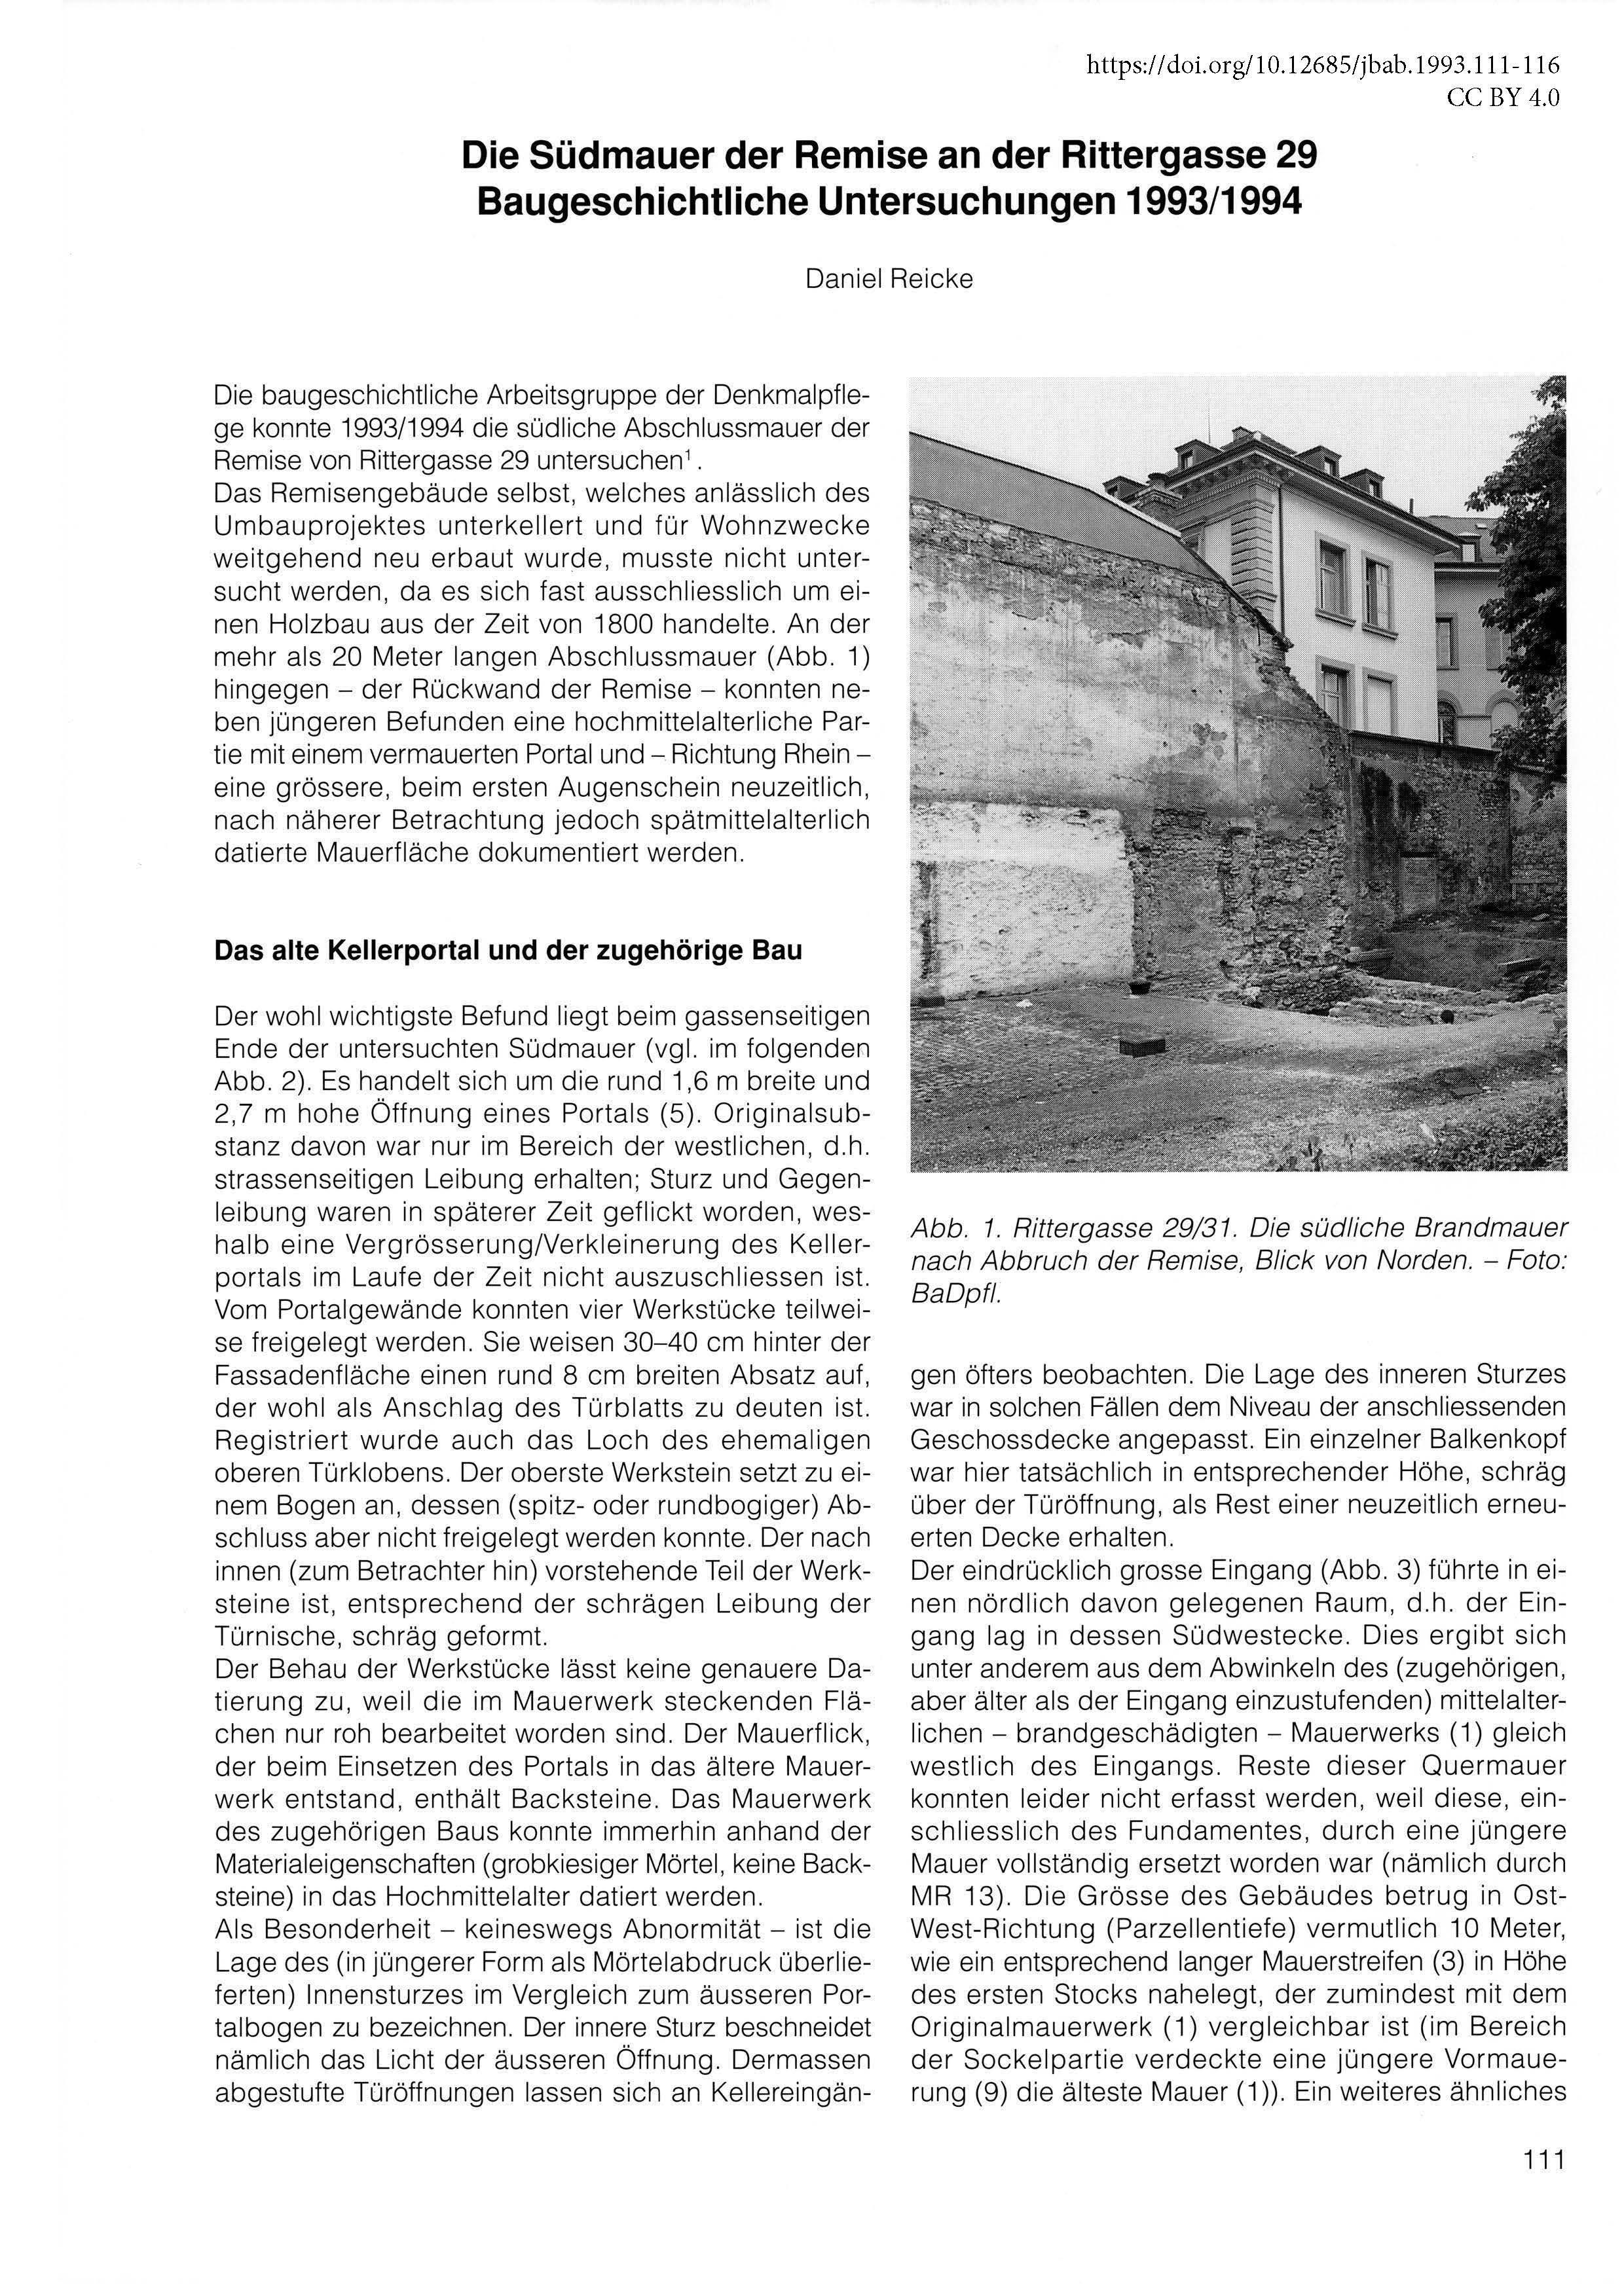 Erste Seite des Artikels über die Südmauer der Remise an der Rittergasse 29